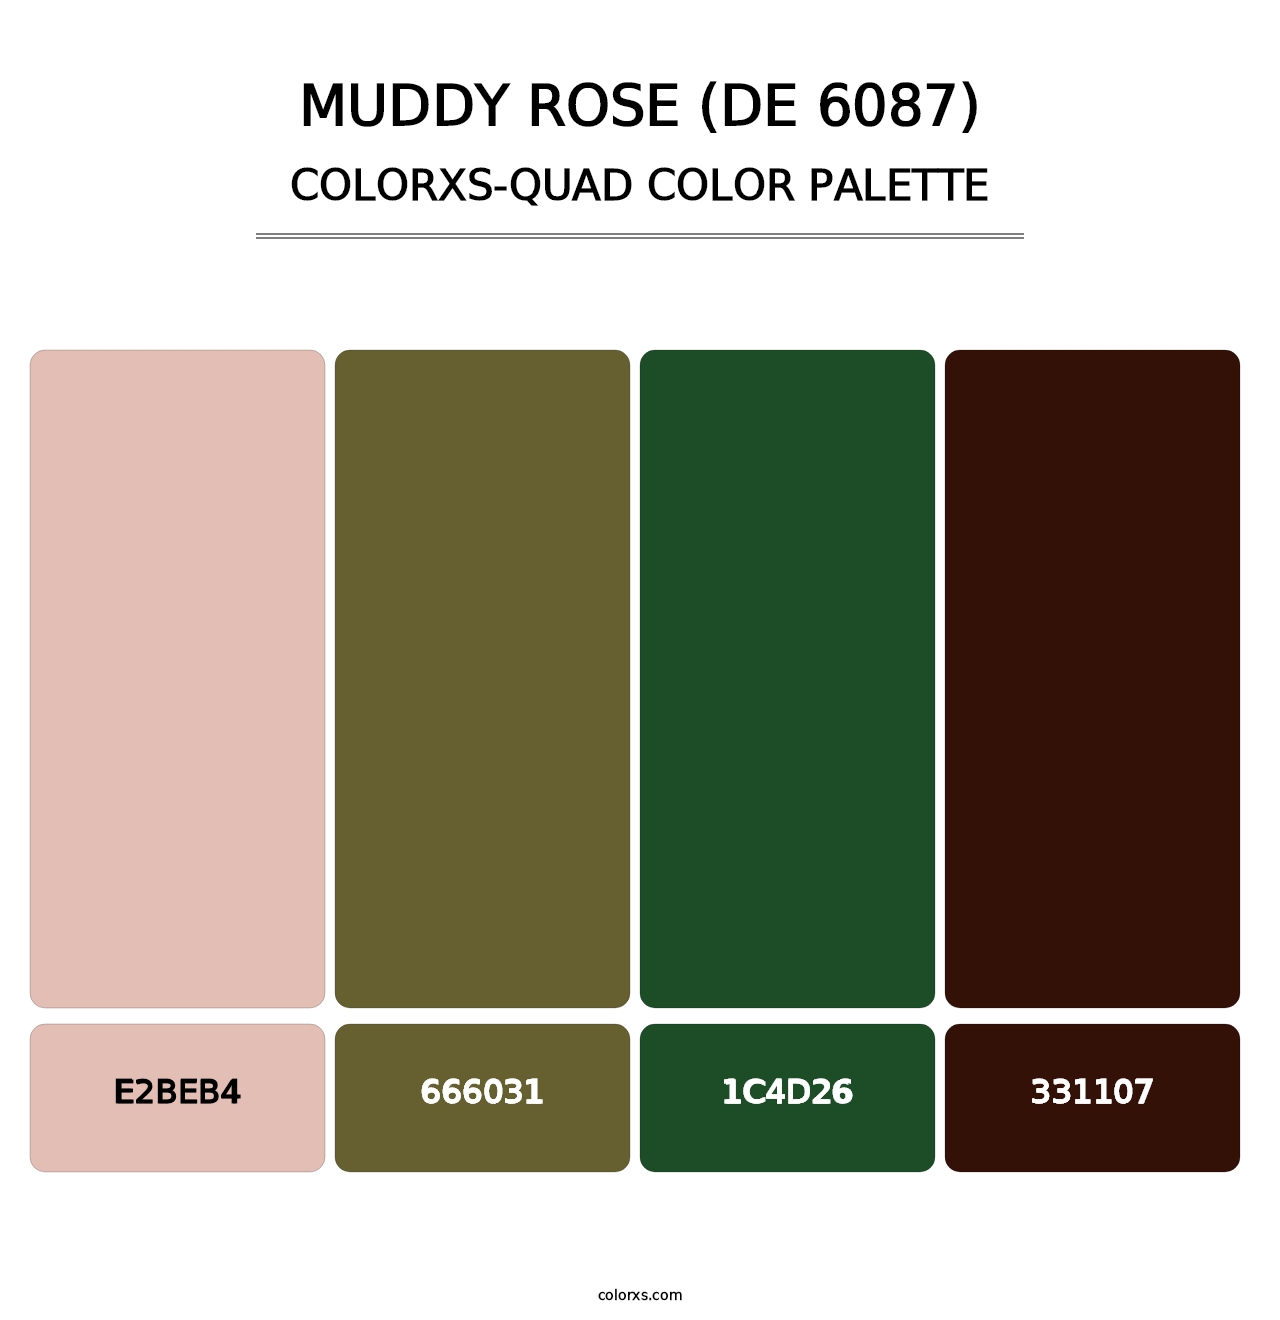 Muddy Rose (DE 6087) - Colorxs Quad Palette